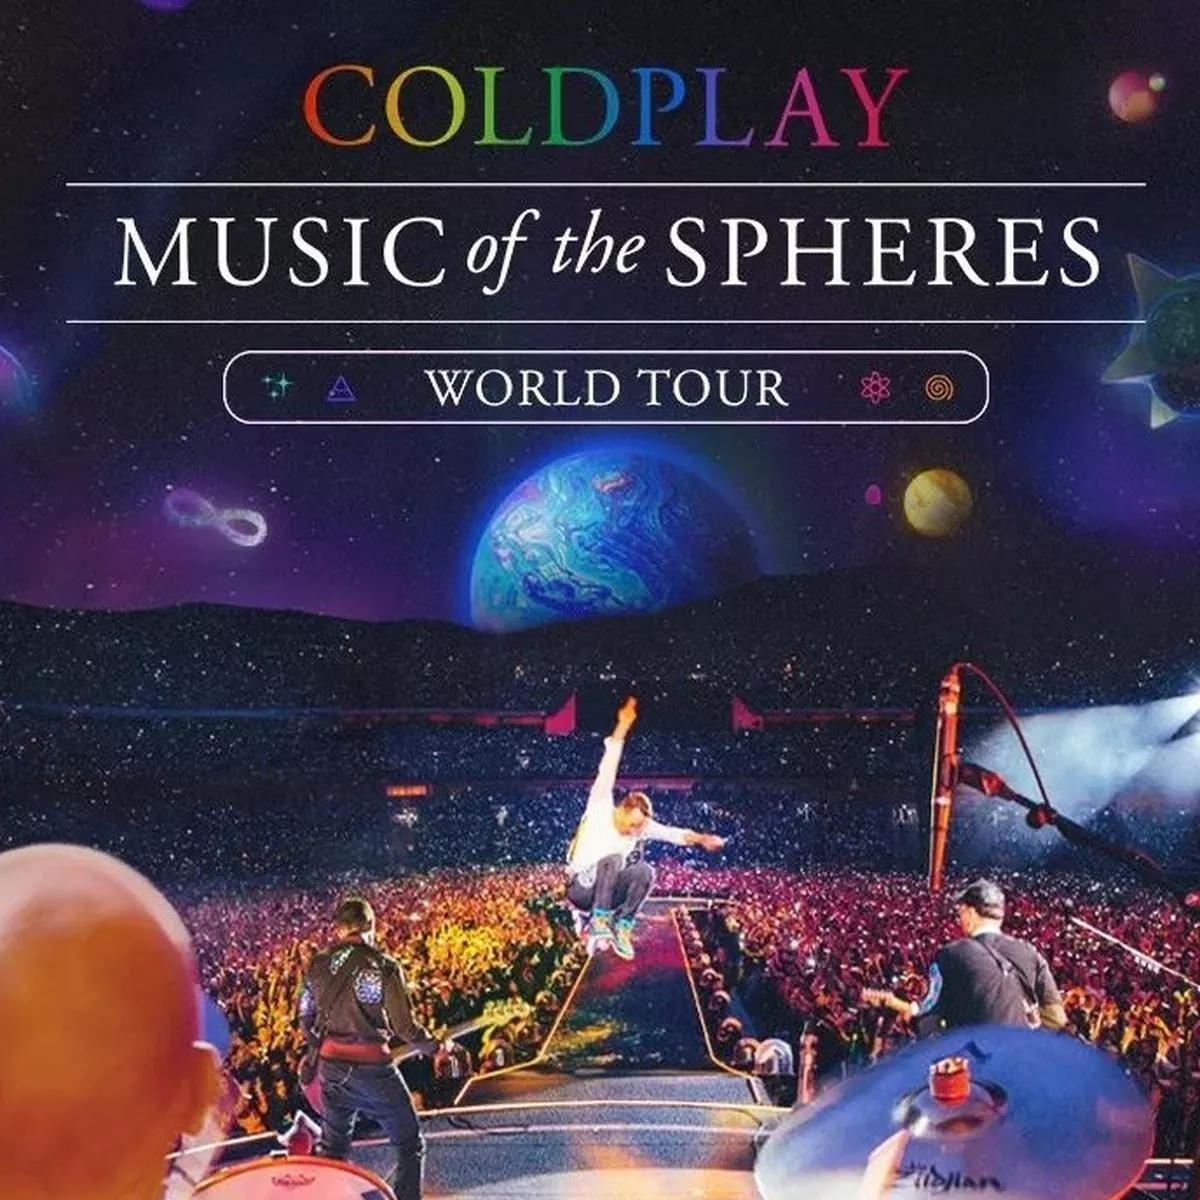 Entradas Coldplay - Cancha General - 20/09/2022